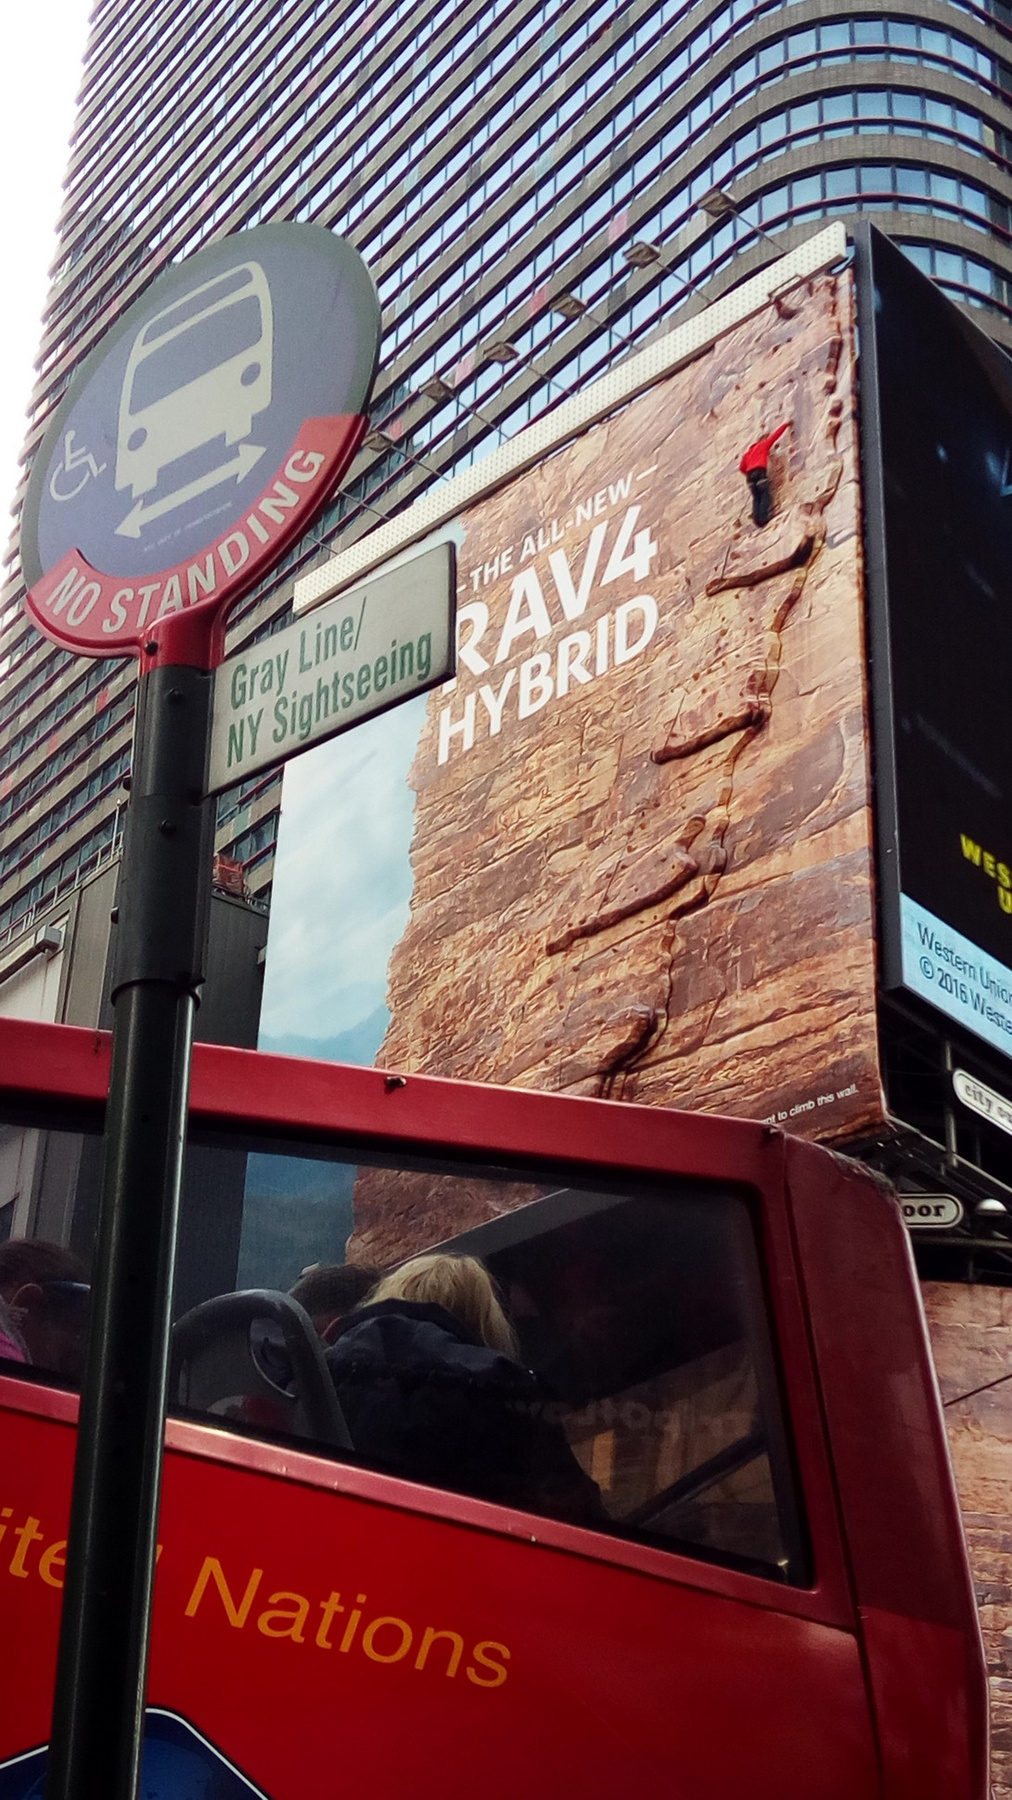 RAV-4 hirdetés a Times Square-en. Hegymászó nélkül harmad annyian se néznék